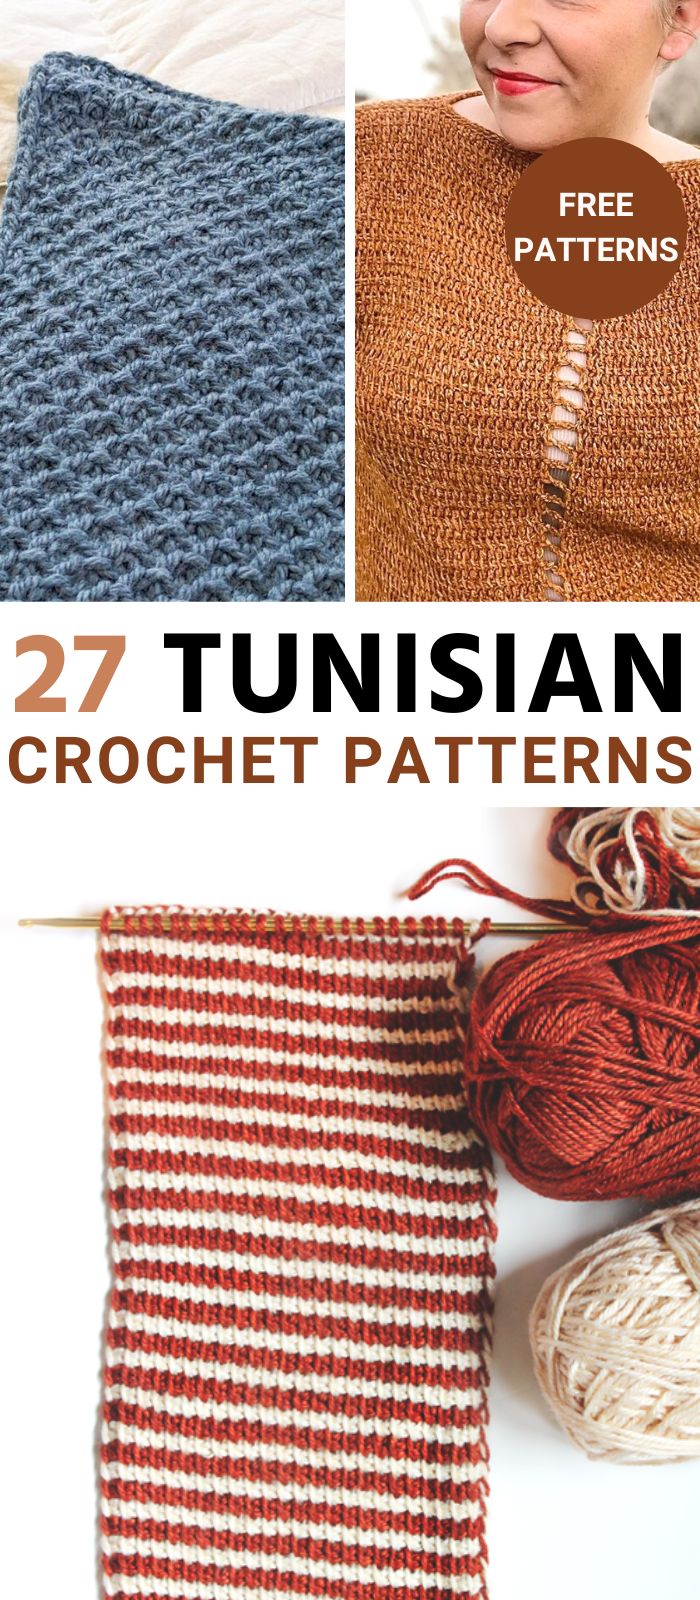 tunsian crochet patterns